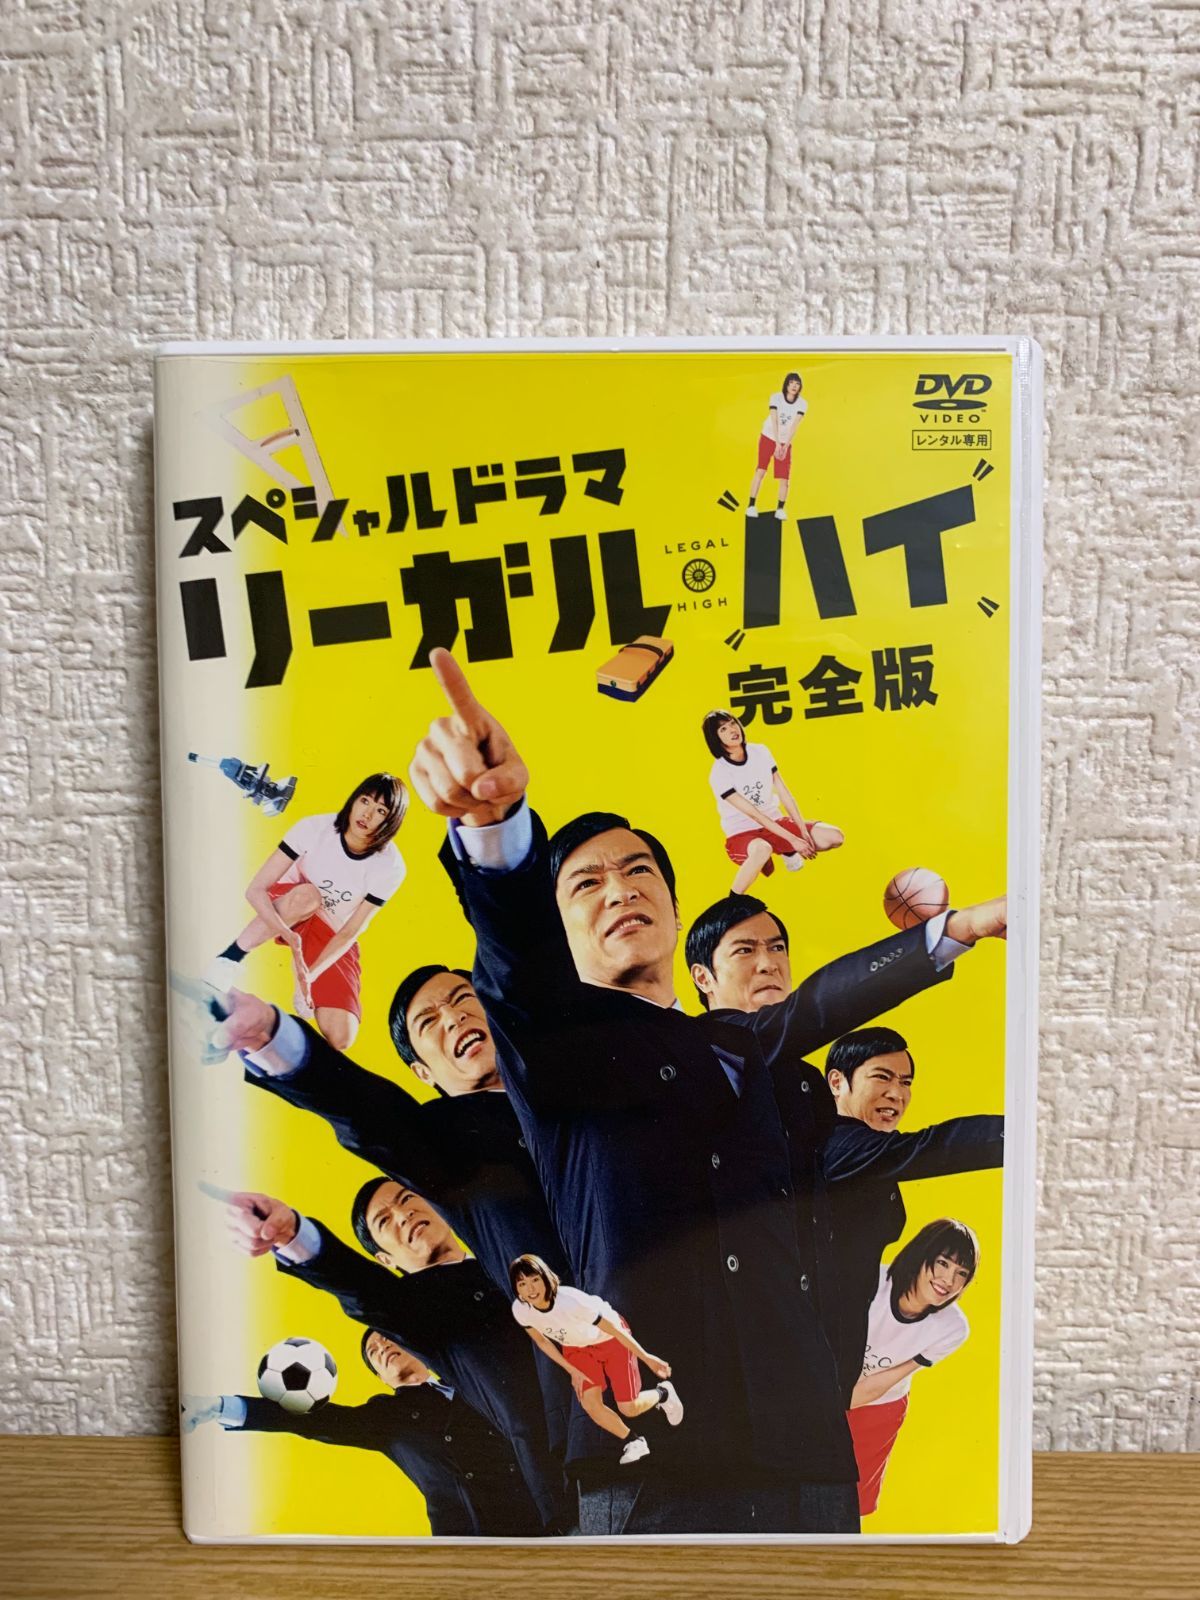 リーガルハイ DVD 全巻セット レンタル落ち - TVドラマ